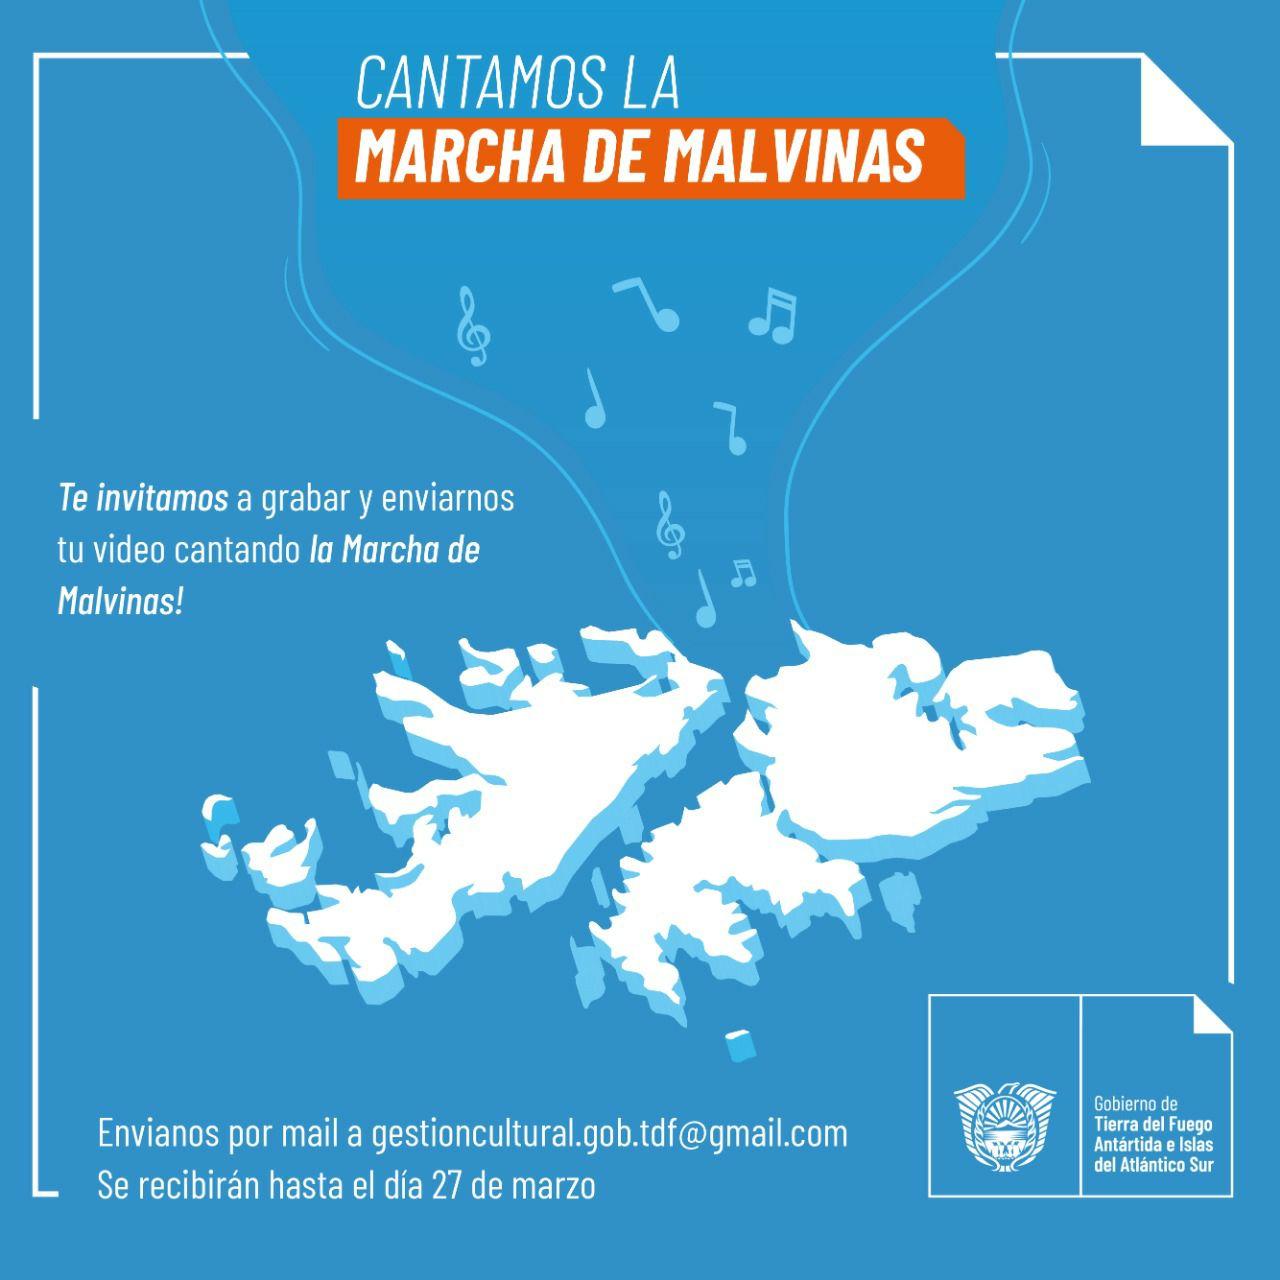 Photo of Cultura provincial invita a conmemorar el día del veterano y los caídos en Malvinas enviando un video desde los hogares